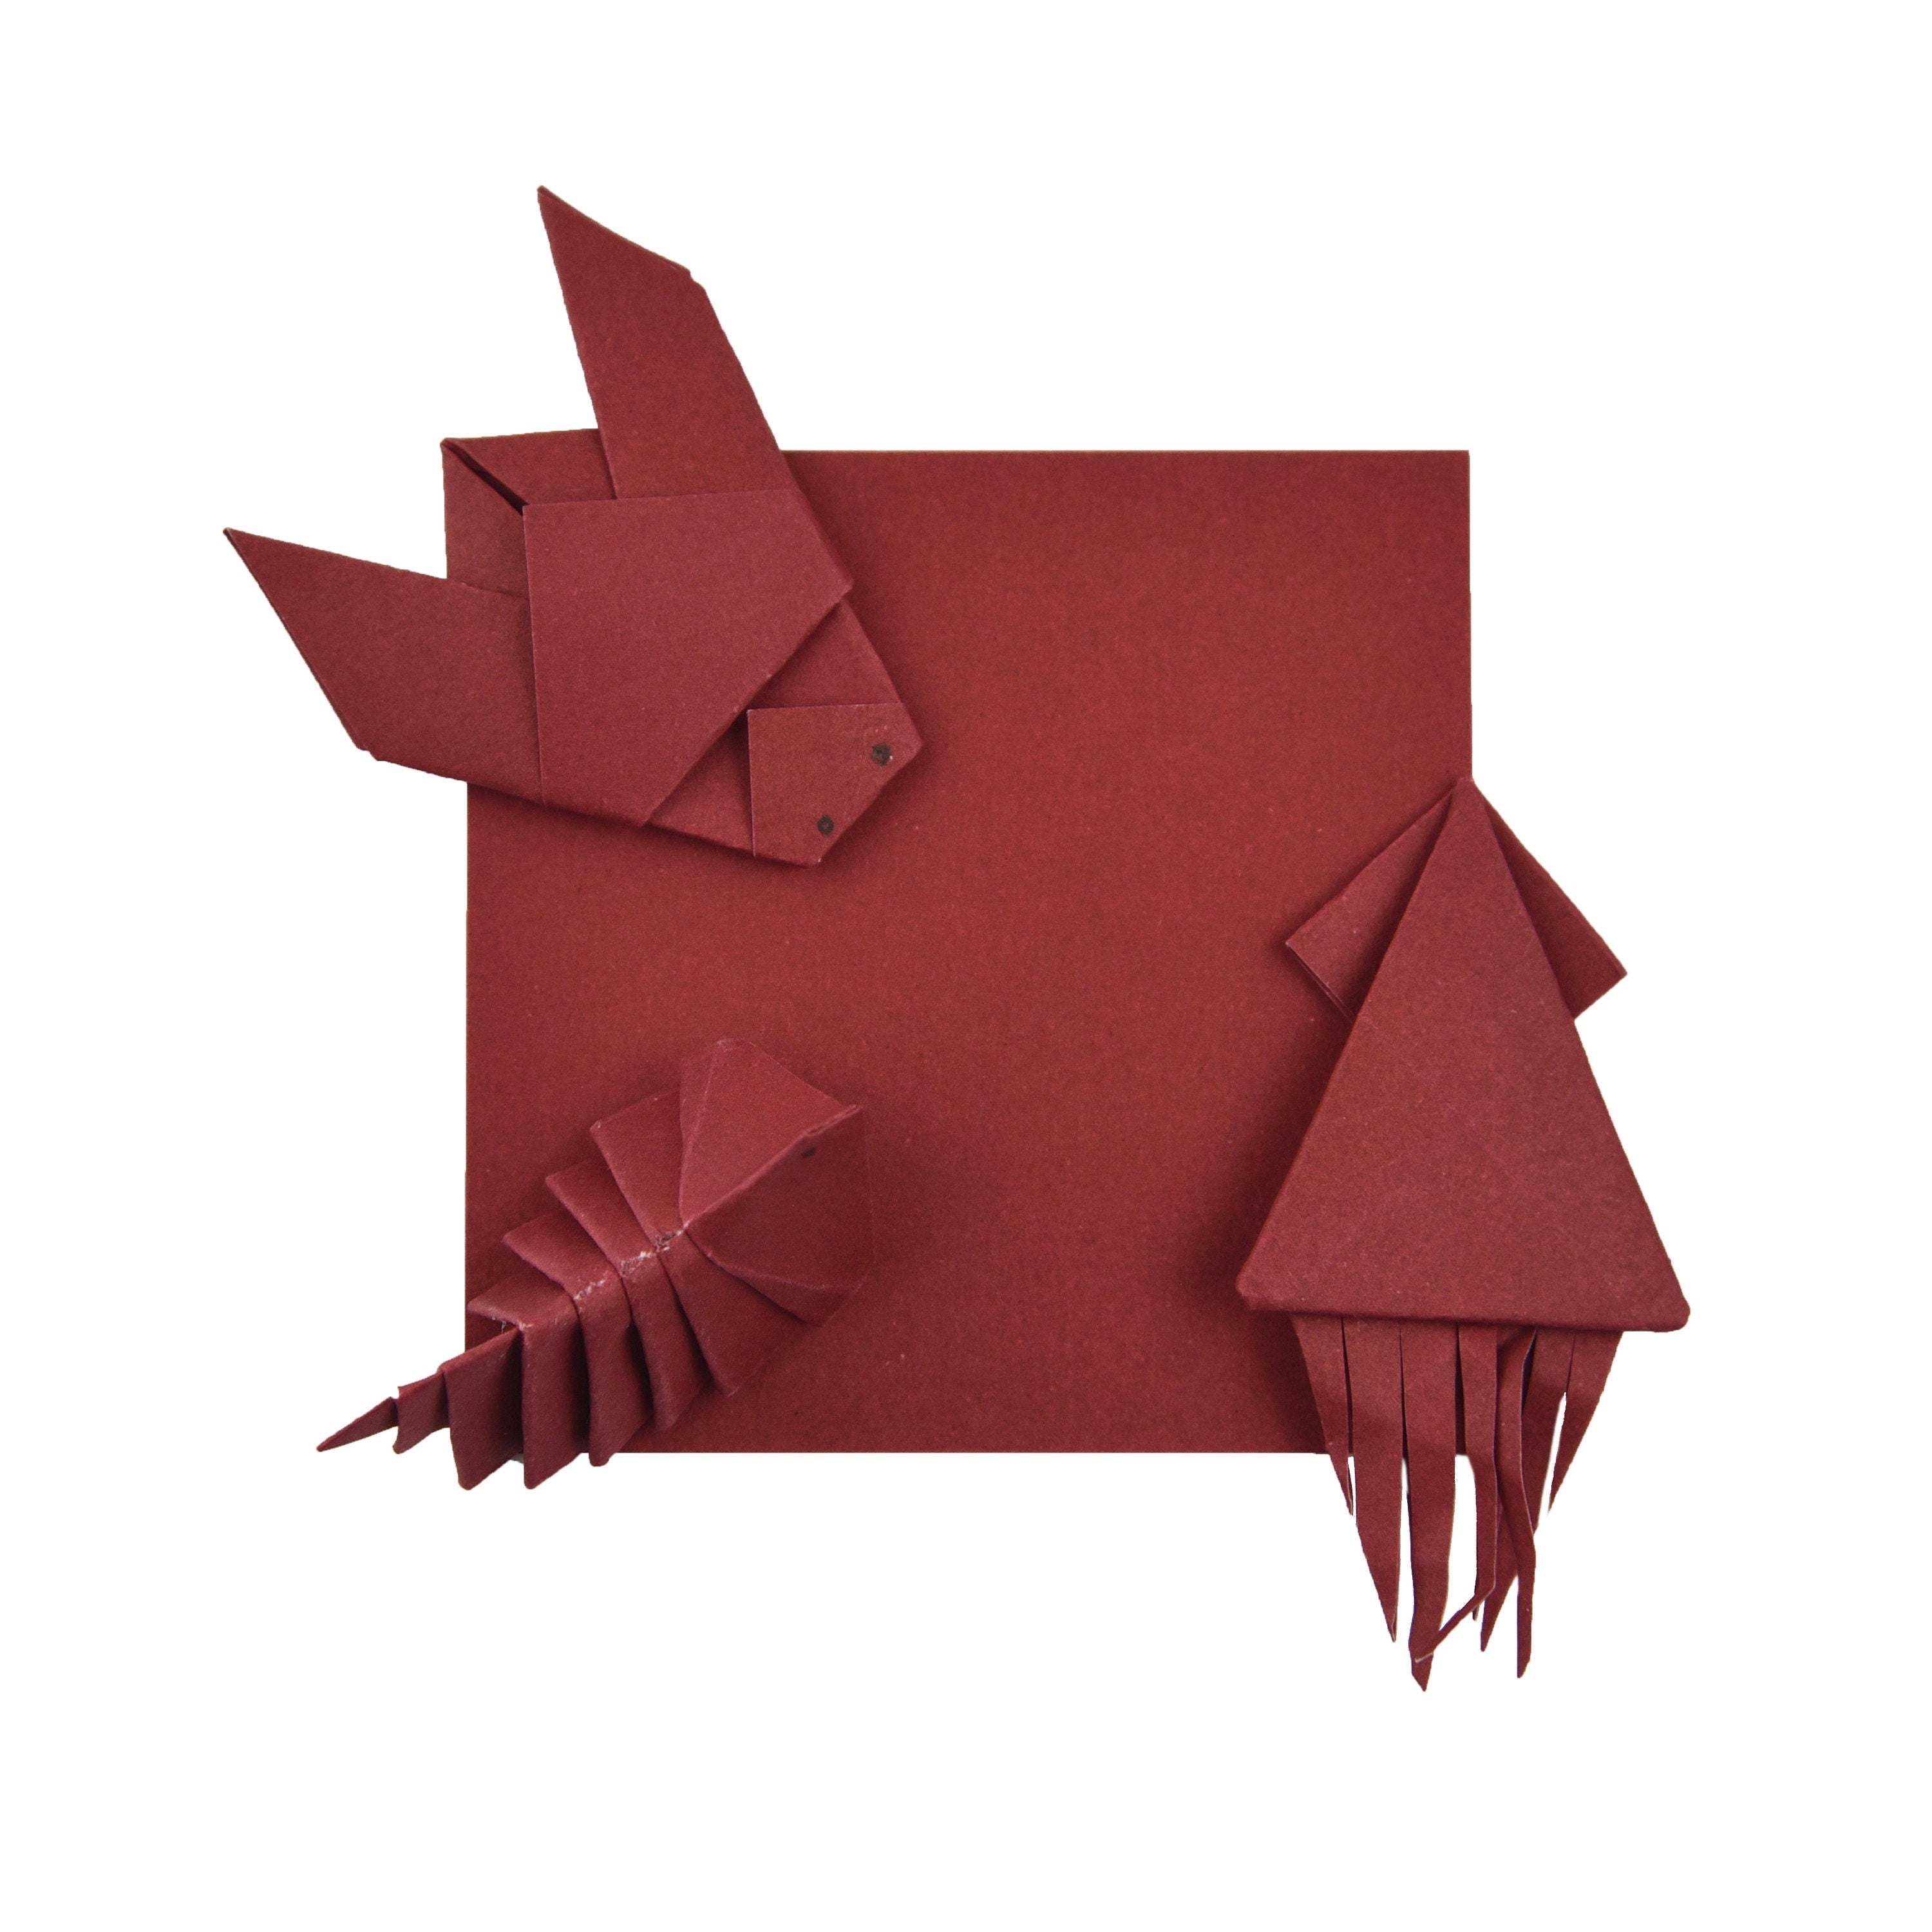 100 fogli di carta origami - 6x6 pollici - Confezione di carta quadrata per piegare, gru origami e decorazioni - S06